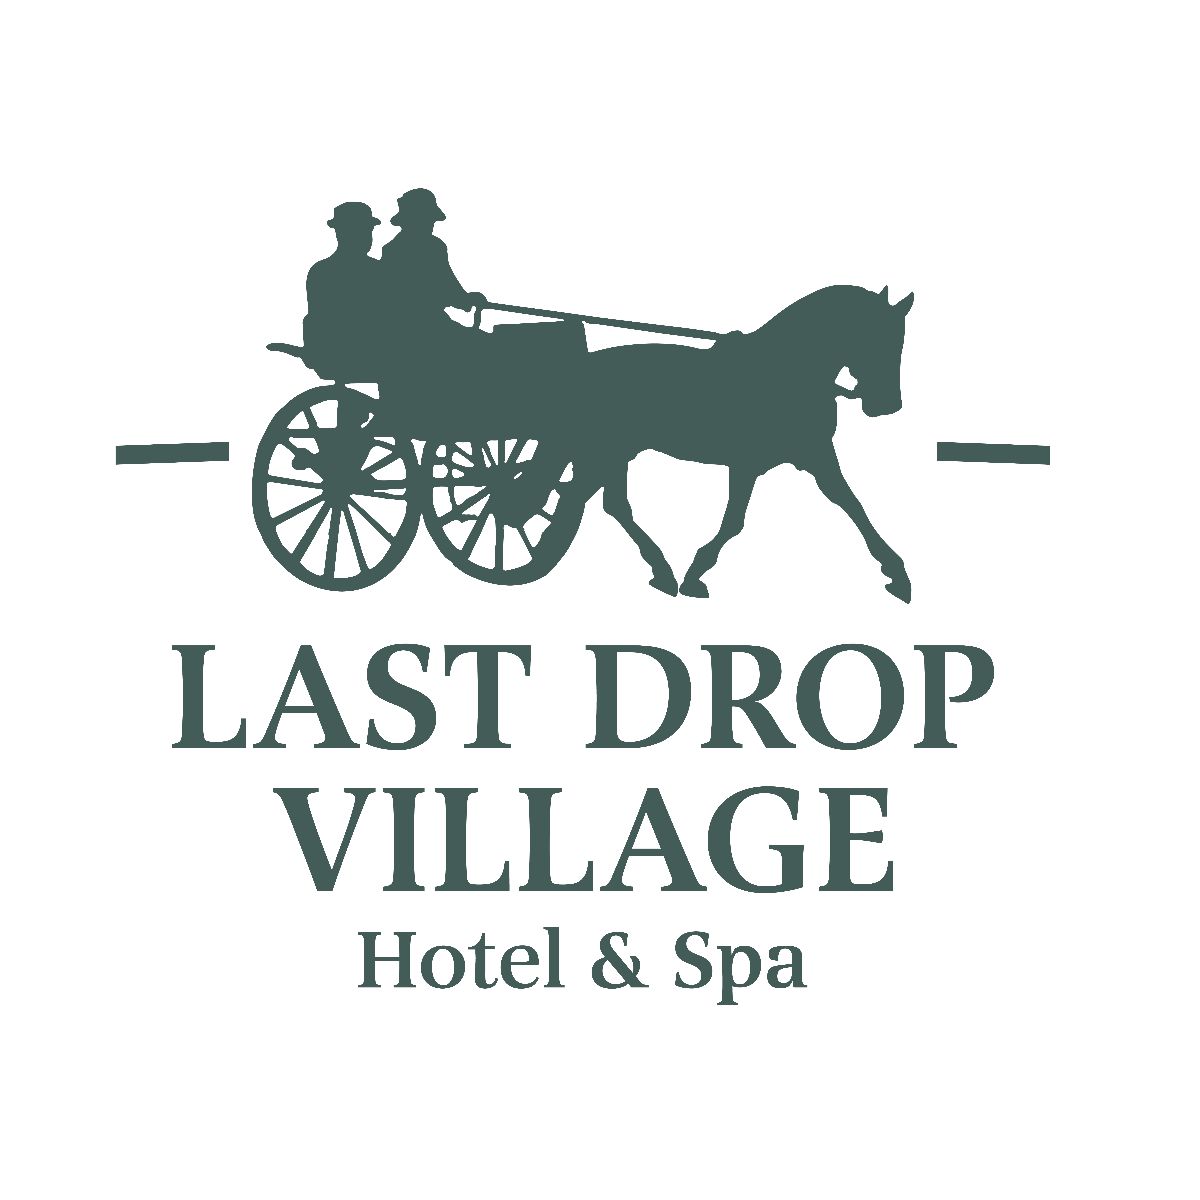 Last Drop Village Hotel & Spa-Image-21